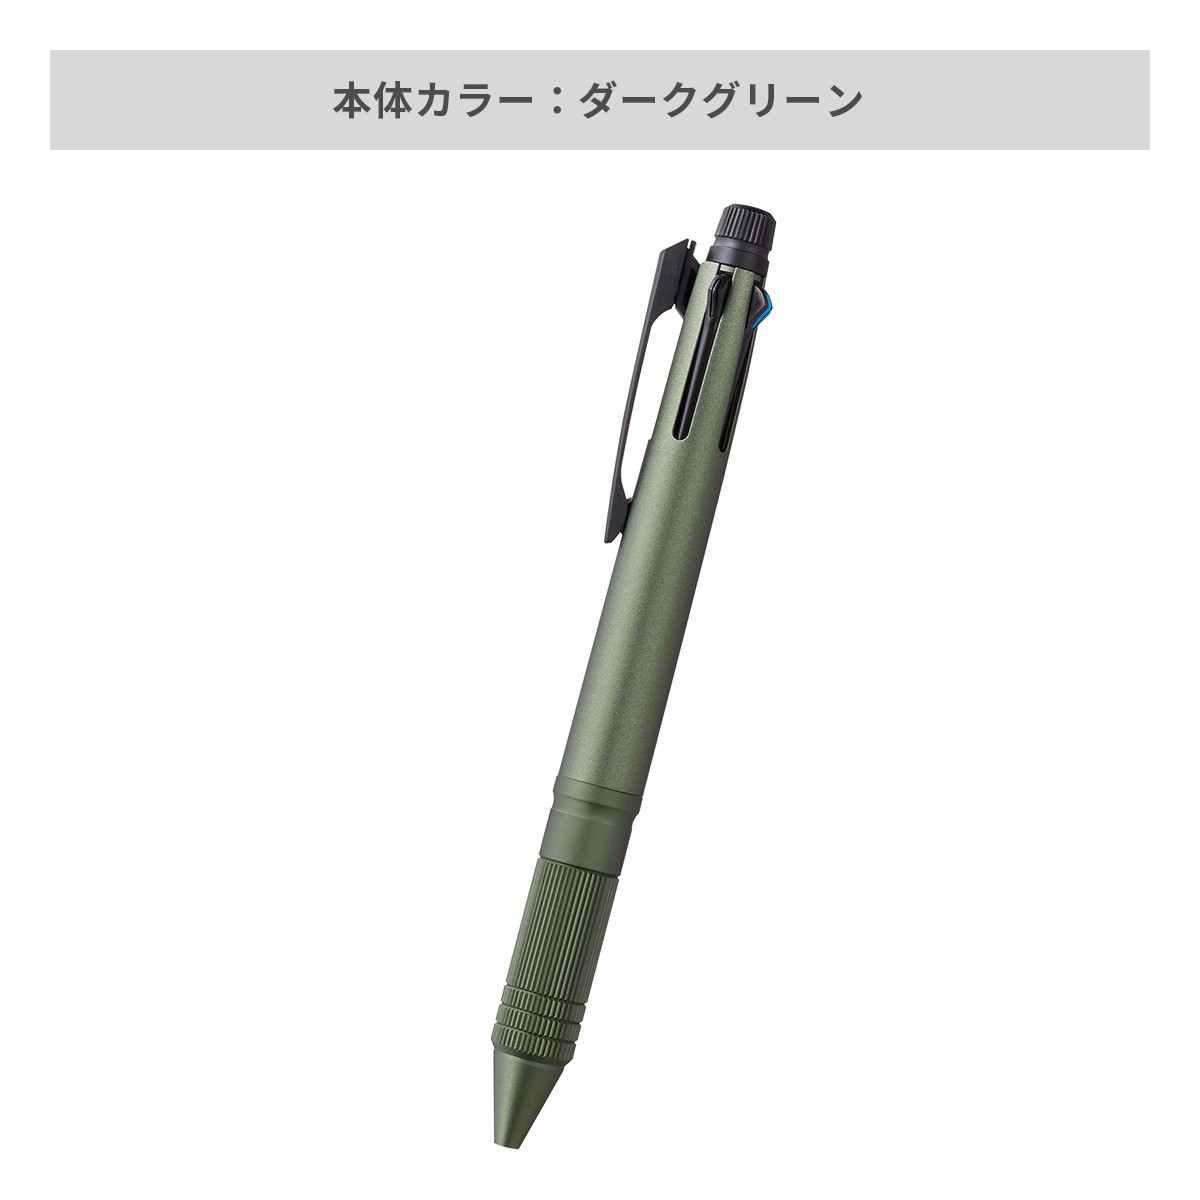 【短納期】三菱鉛筆 ジェットストリーム メタルエディション 多機能ペン 4&1 0.5mm【多機能ペン / レーザー彫刻】 画像4